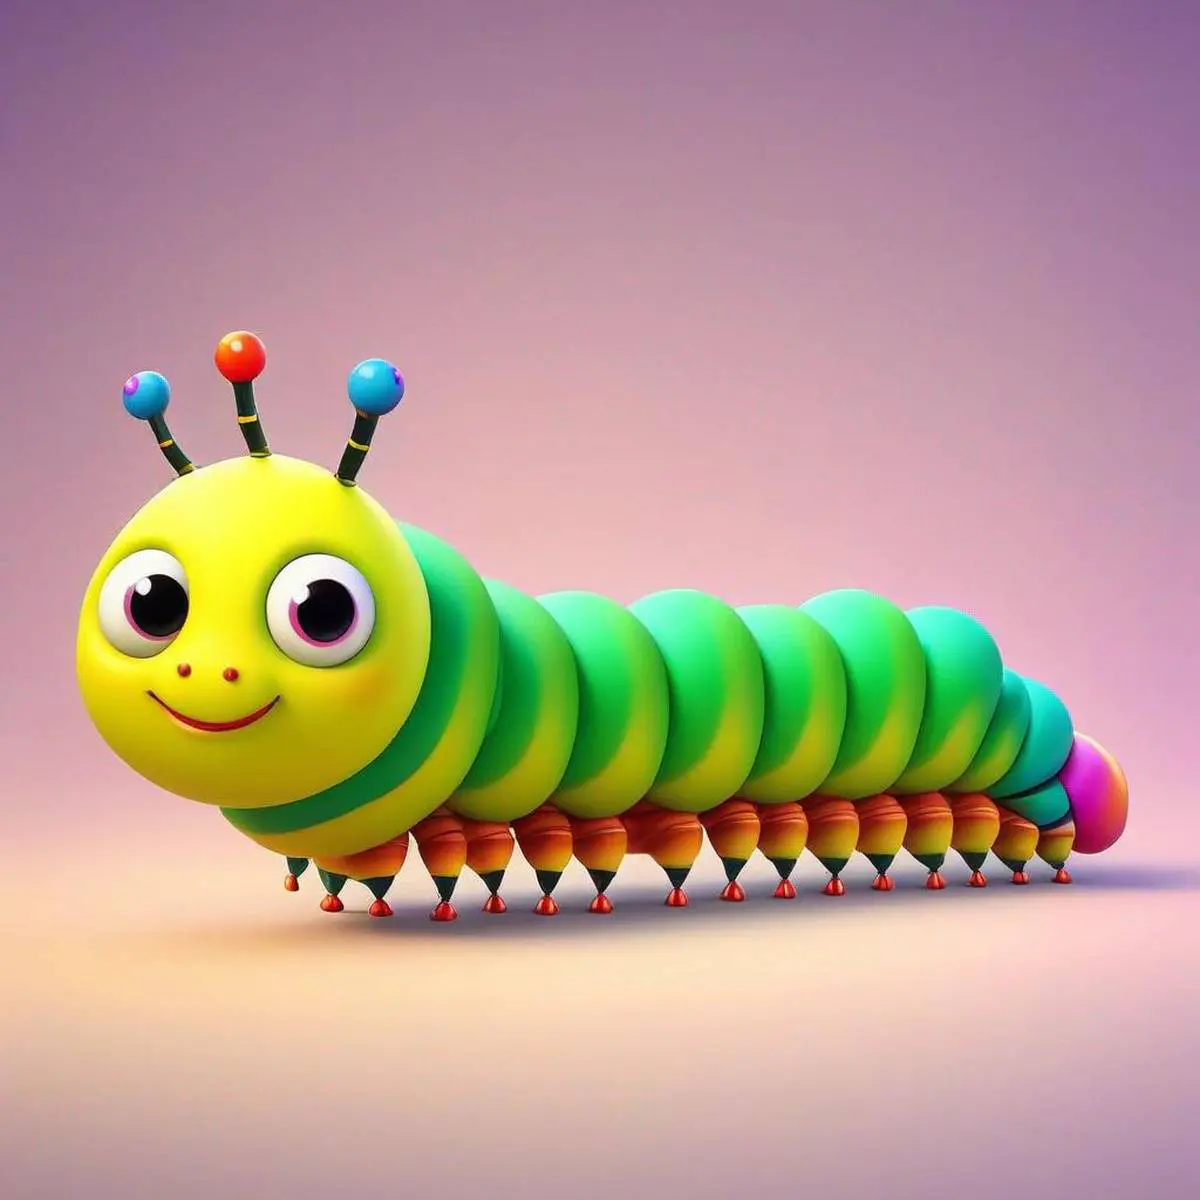 Caterpillar puns